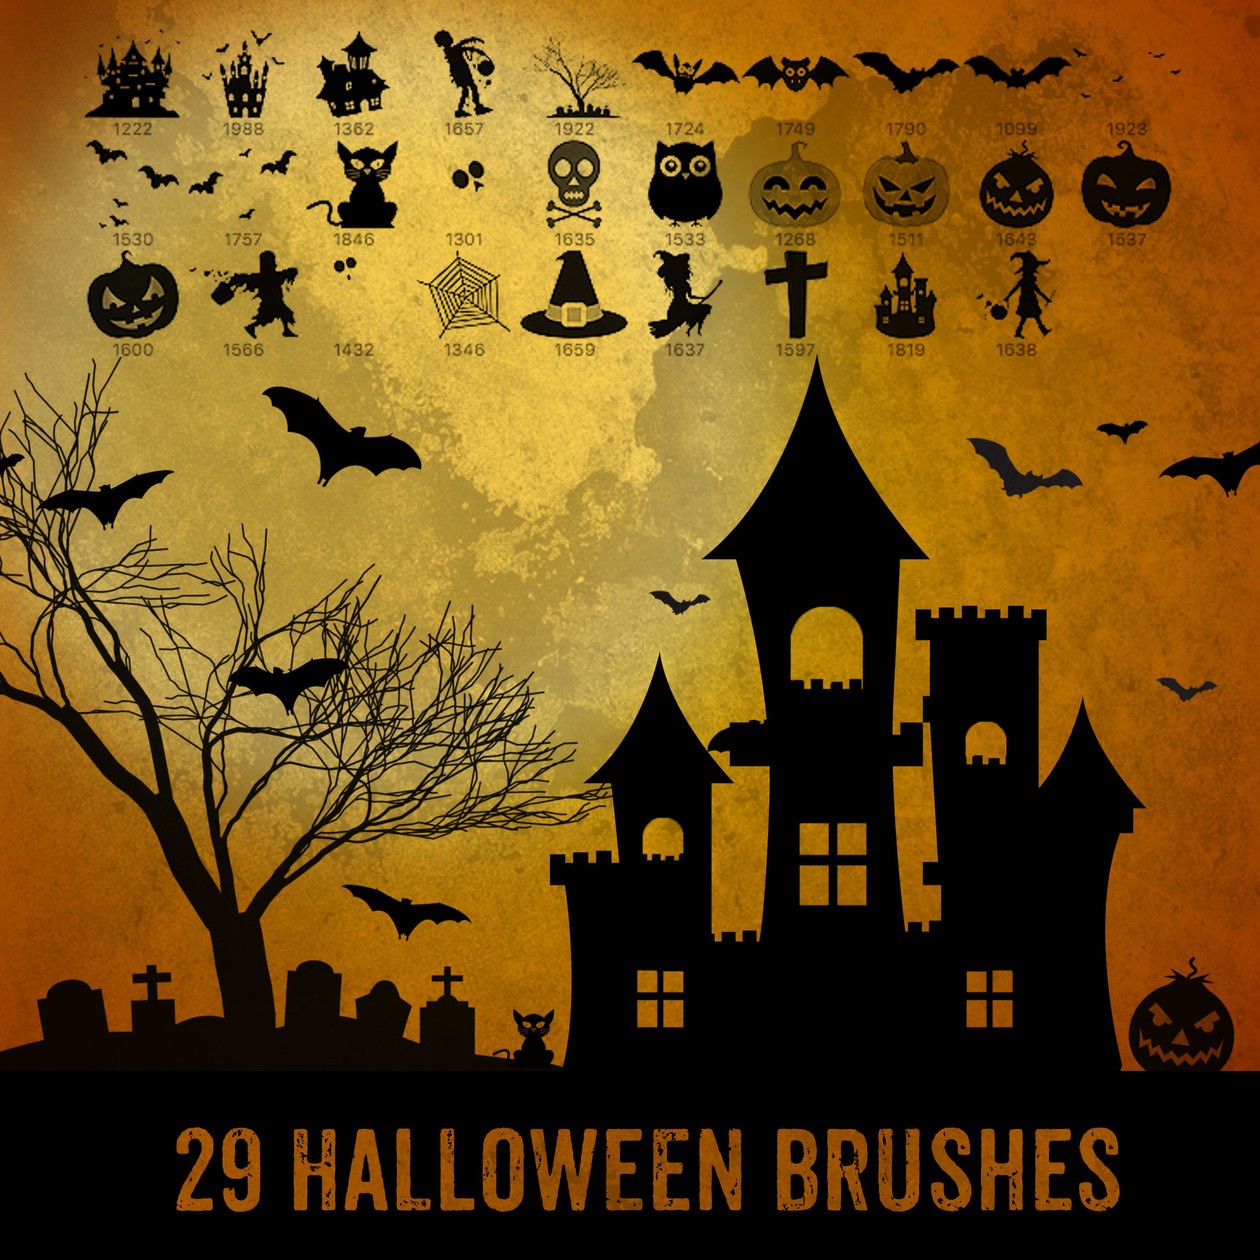 29 Halloween Brushes Photoshop brush